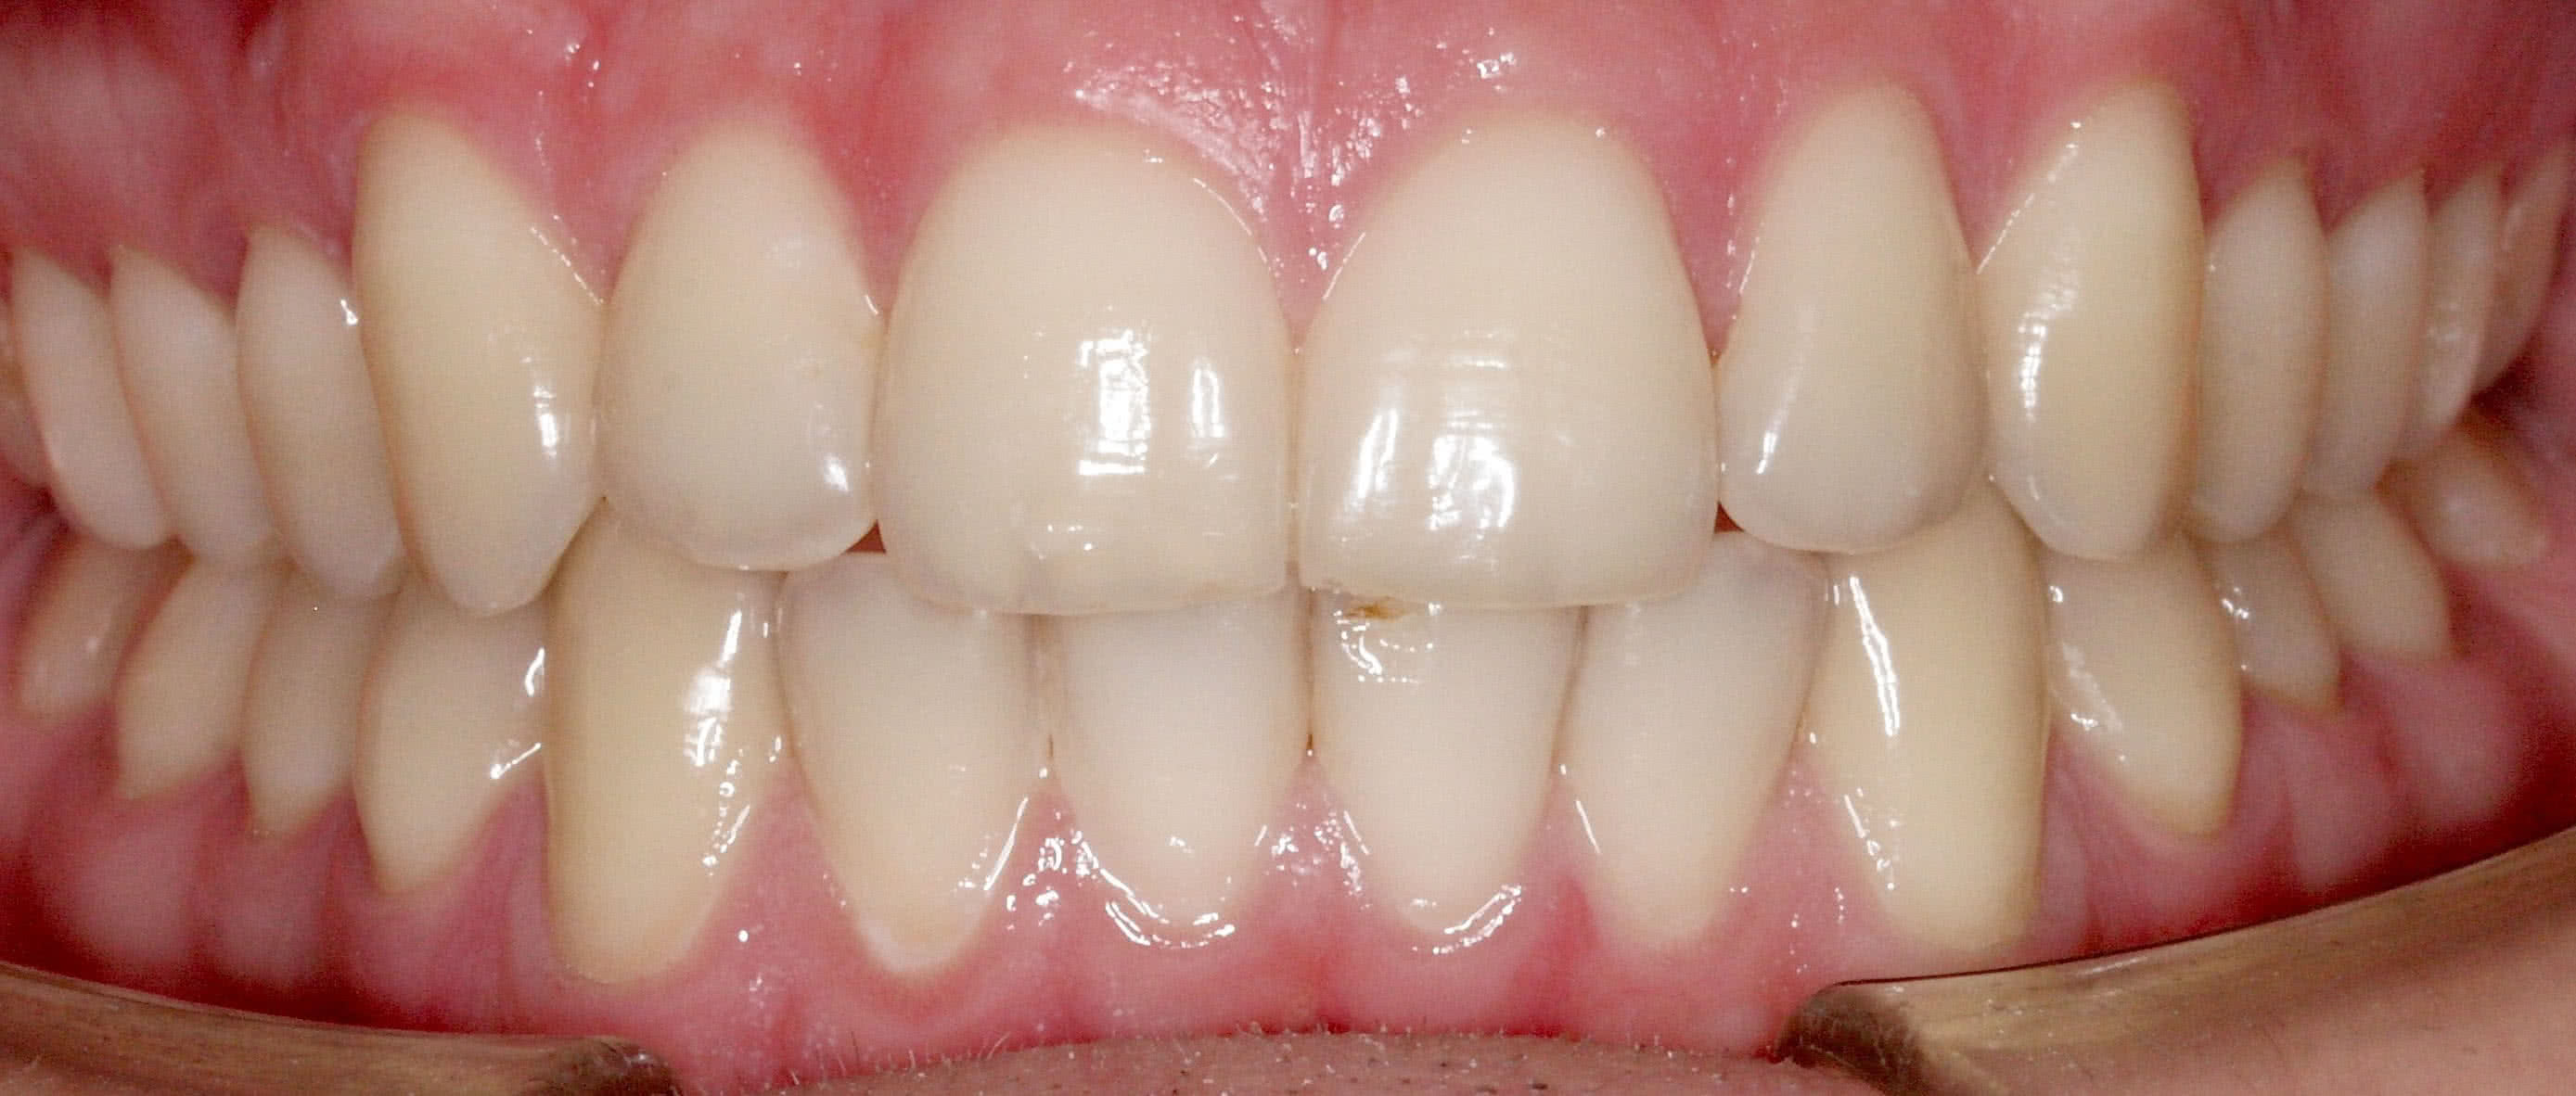 Зубы до процедуры Исправление прикуса